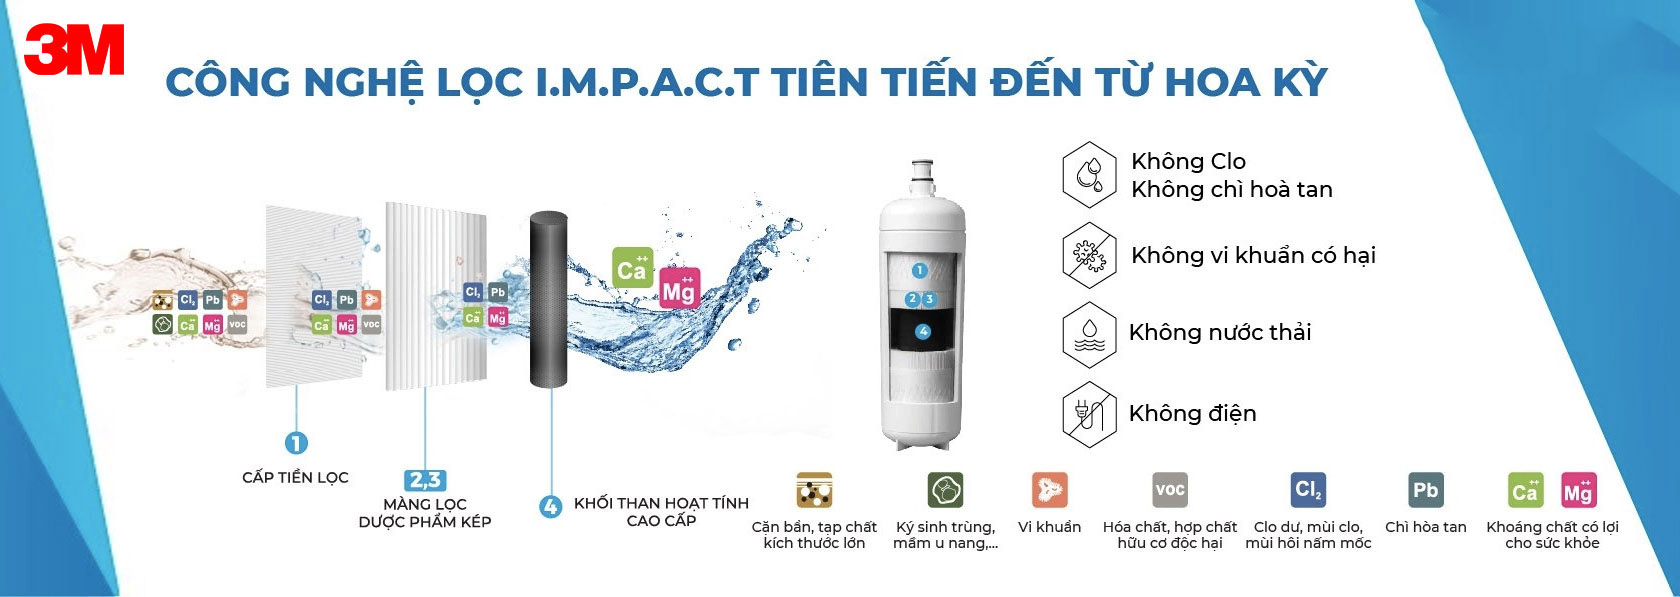 Máy lọc nước tắm 3M sử dụng công nghệ lọc IMPACT